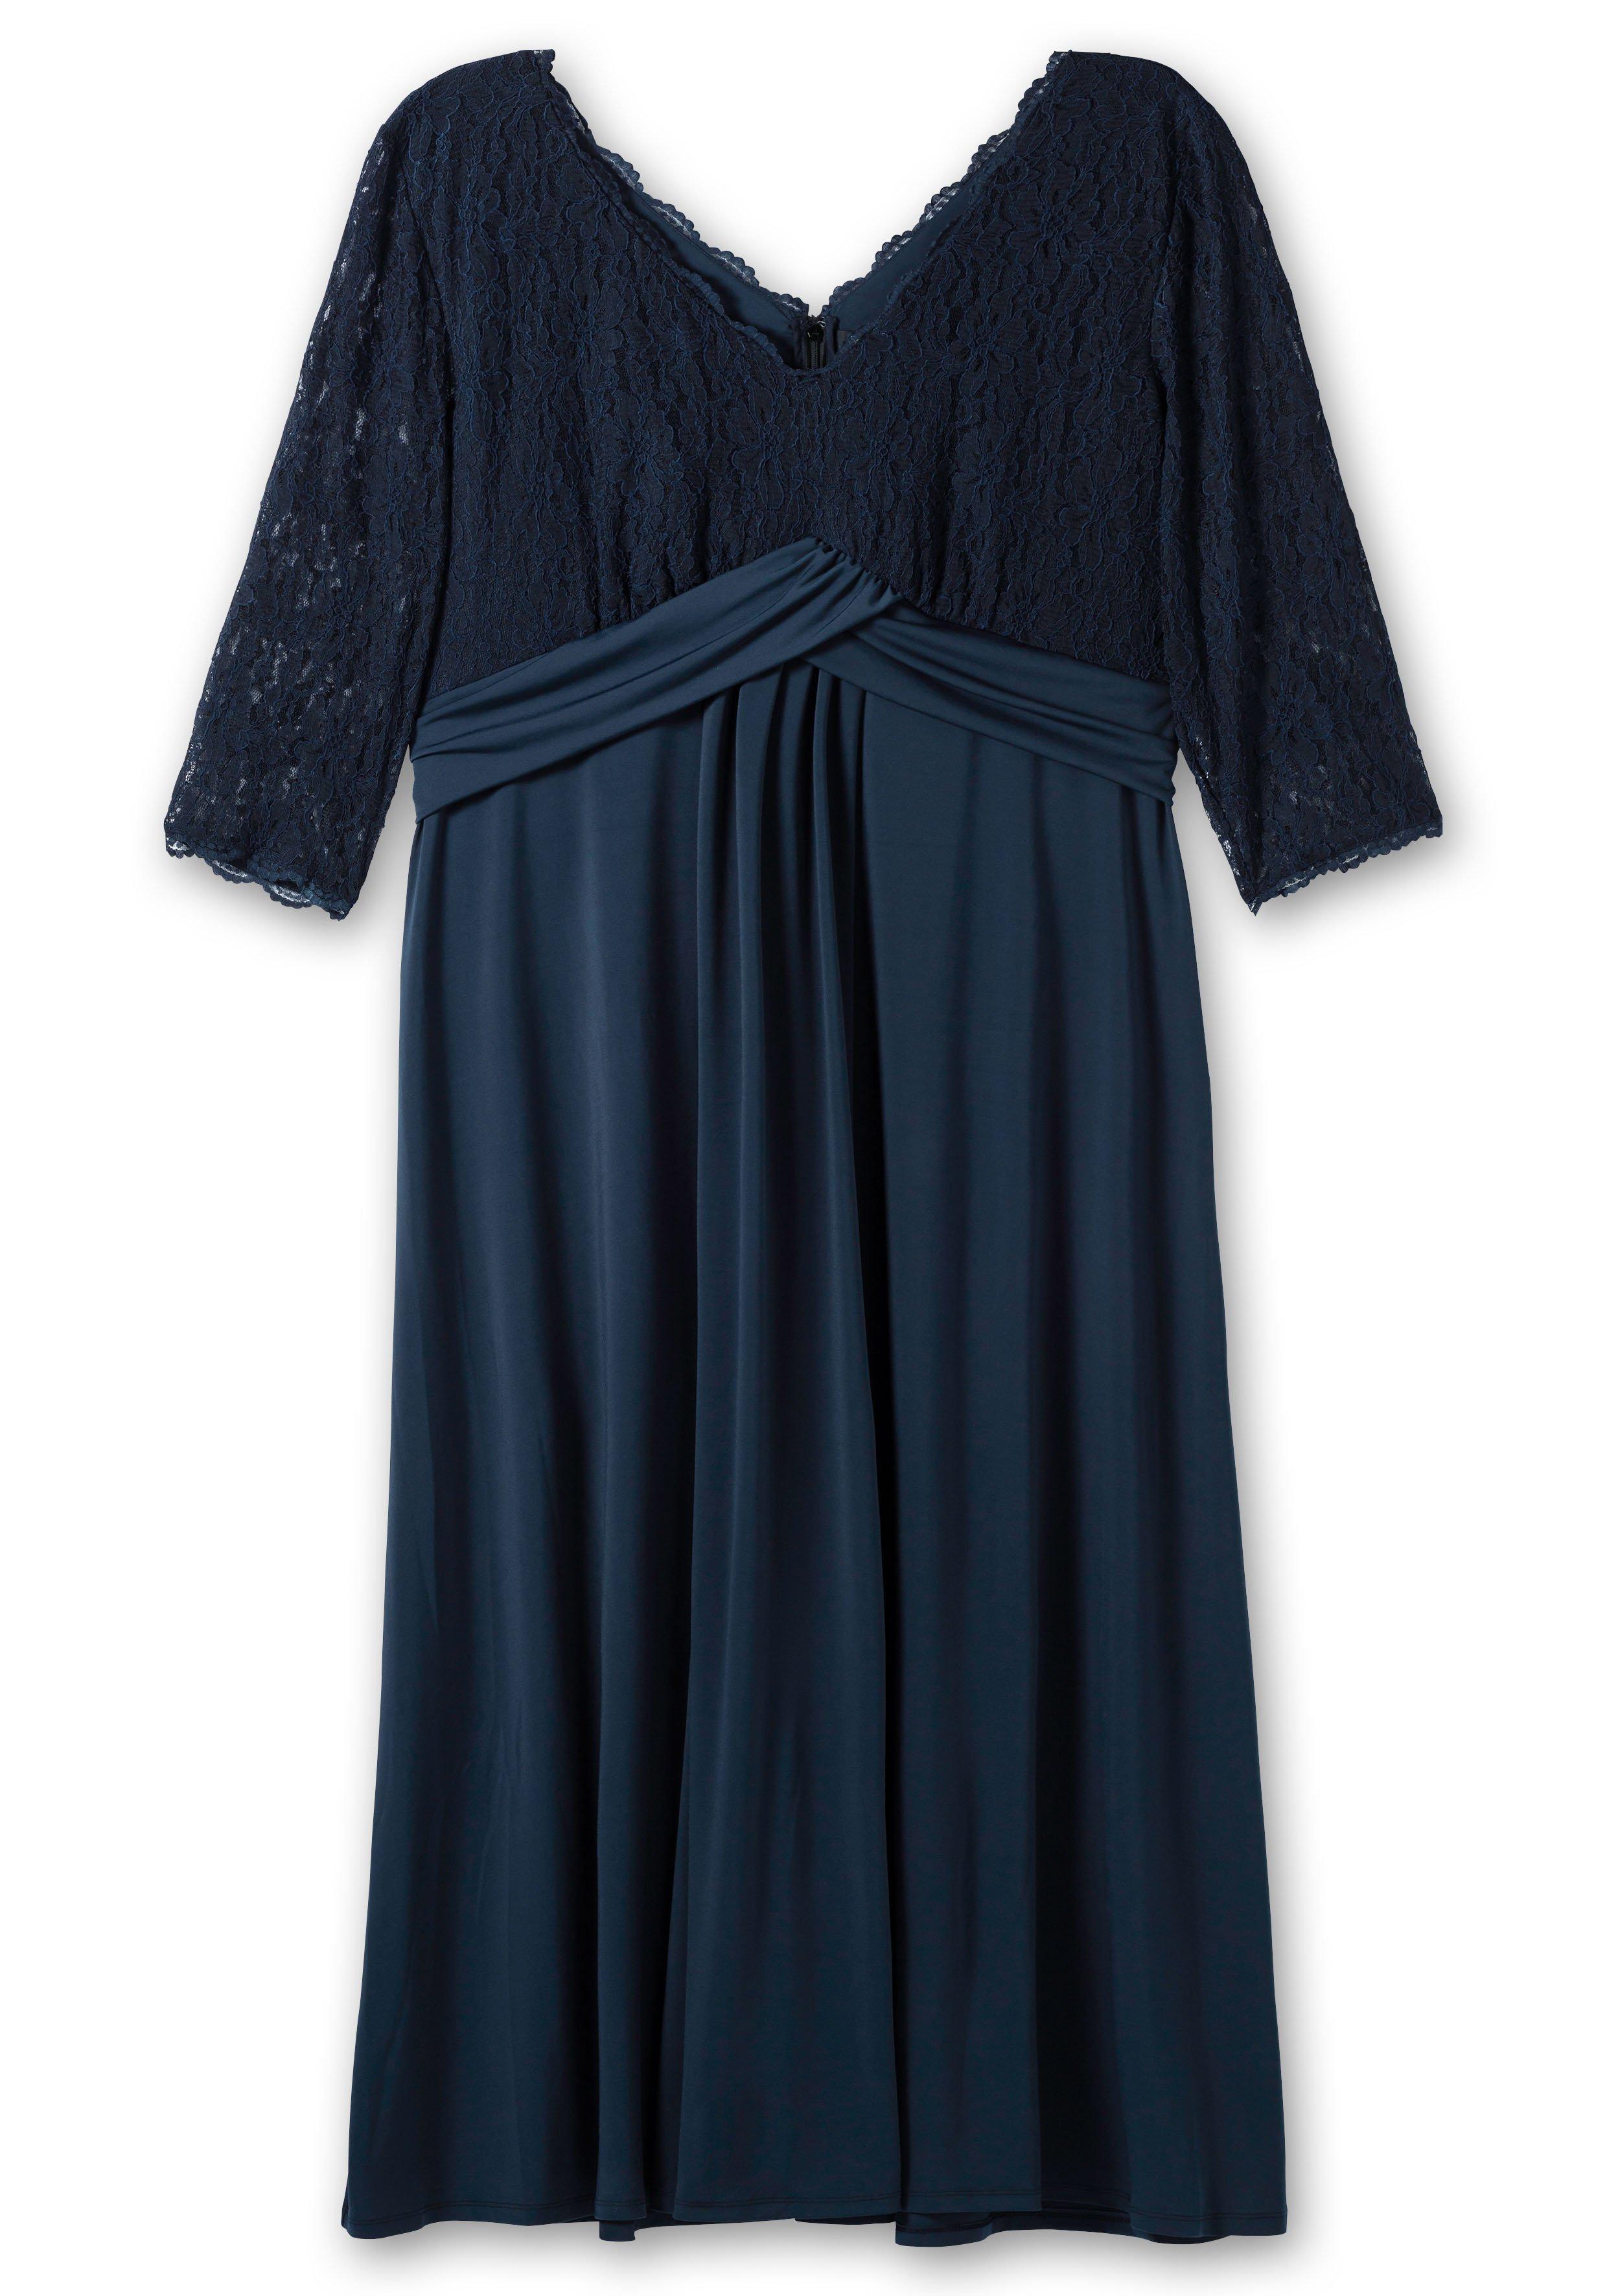 Abendkleid in luftiger, weiter Form mit Bindeband - dunkelblau | sheego | Abendkleider